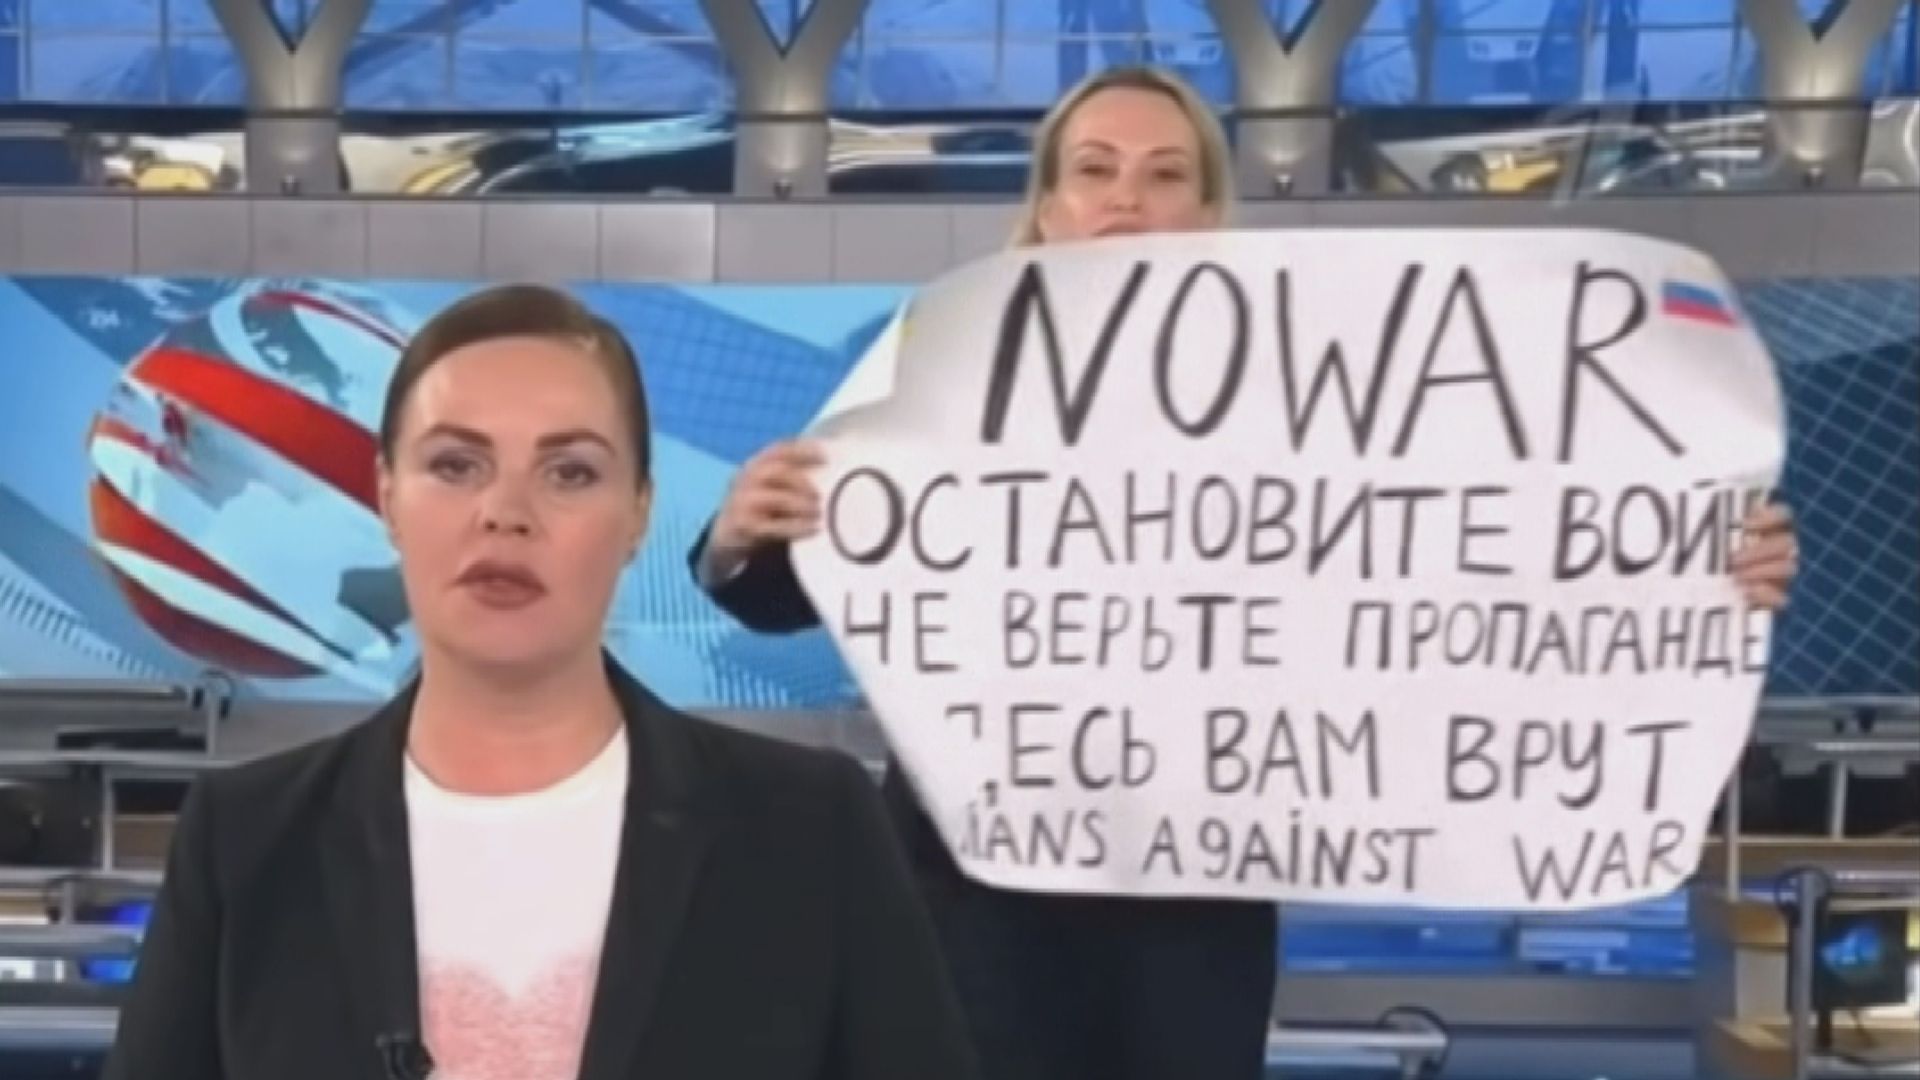 俄羅斯國營電視台員工直播時示威　遭法庭判處罰款